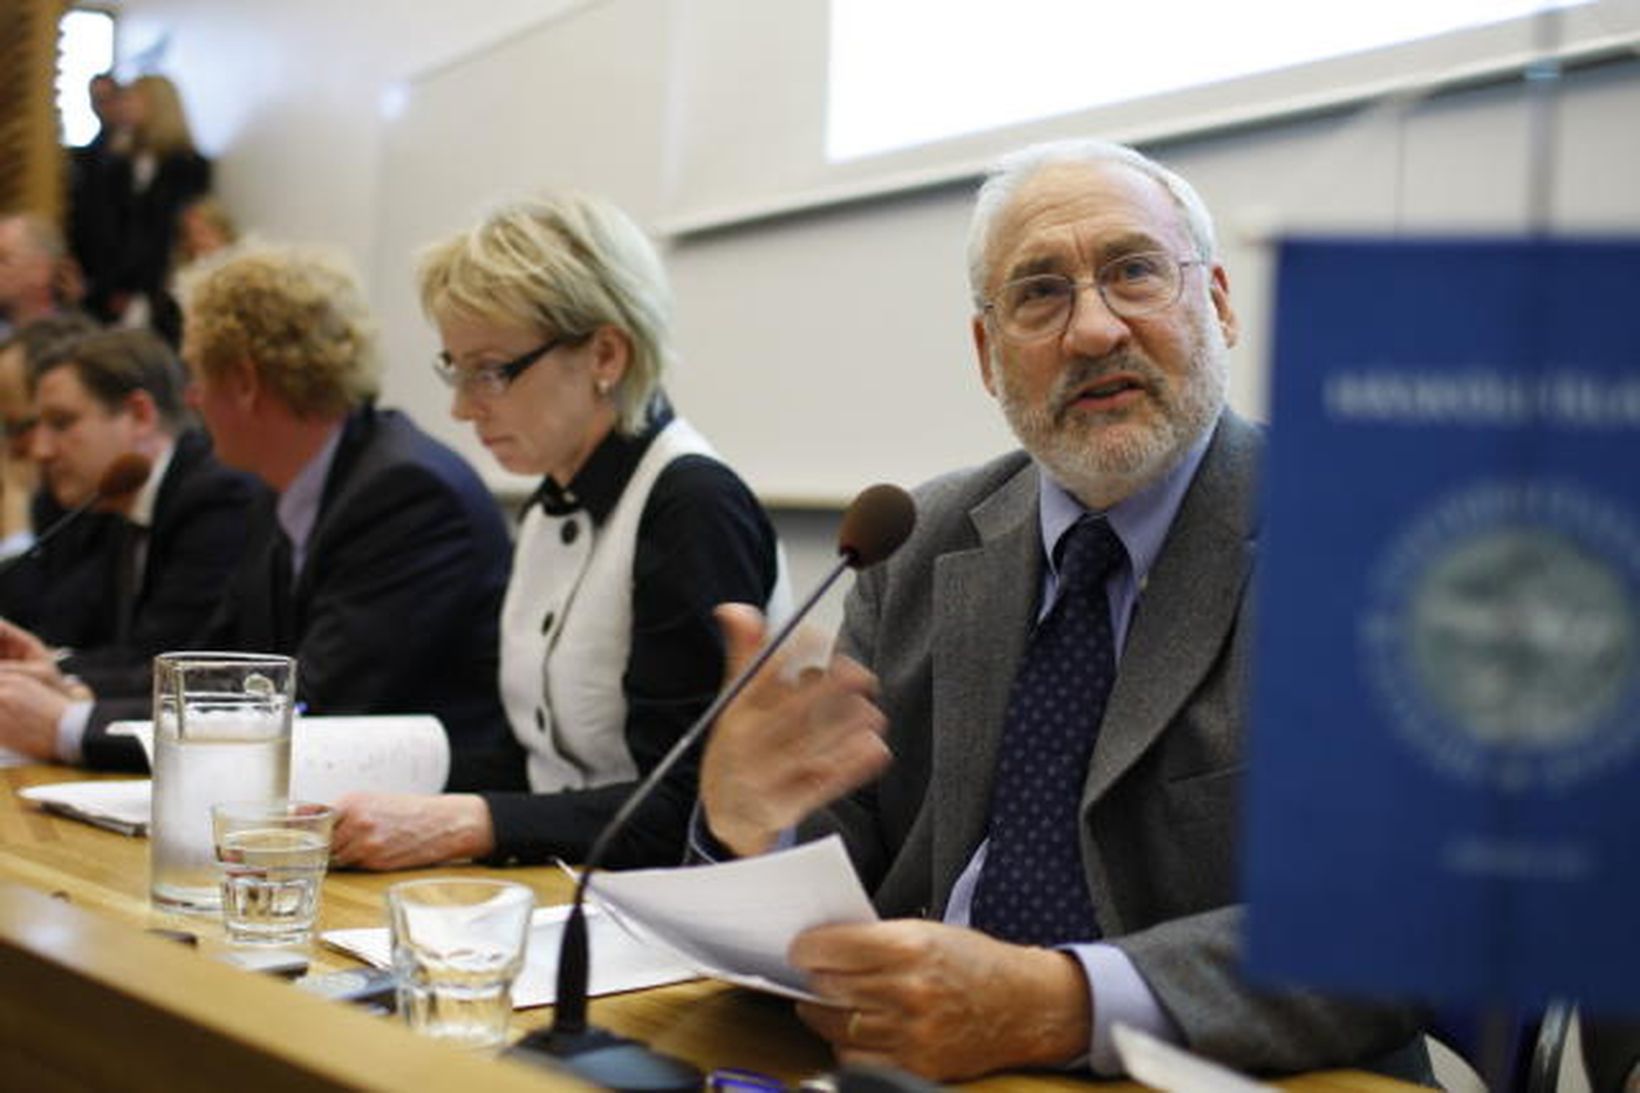 Joseph Stiglitz, ásamt Lilju Mósesdóttur og Jóni Daníelssyni á fundinum …